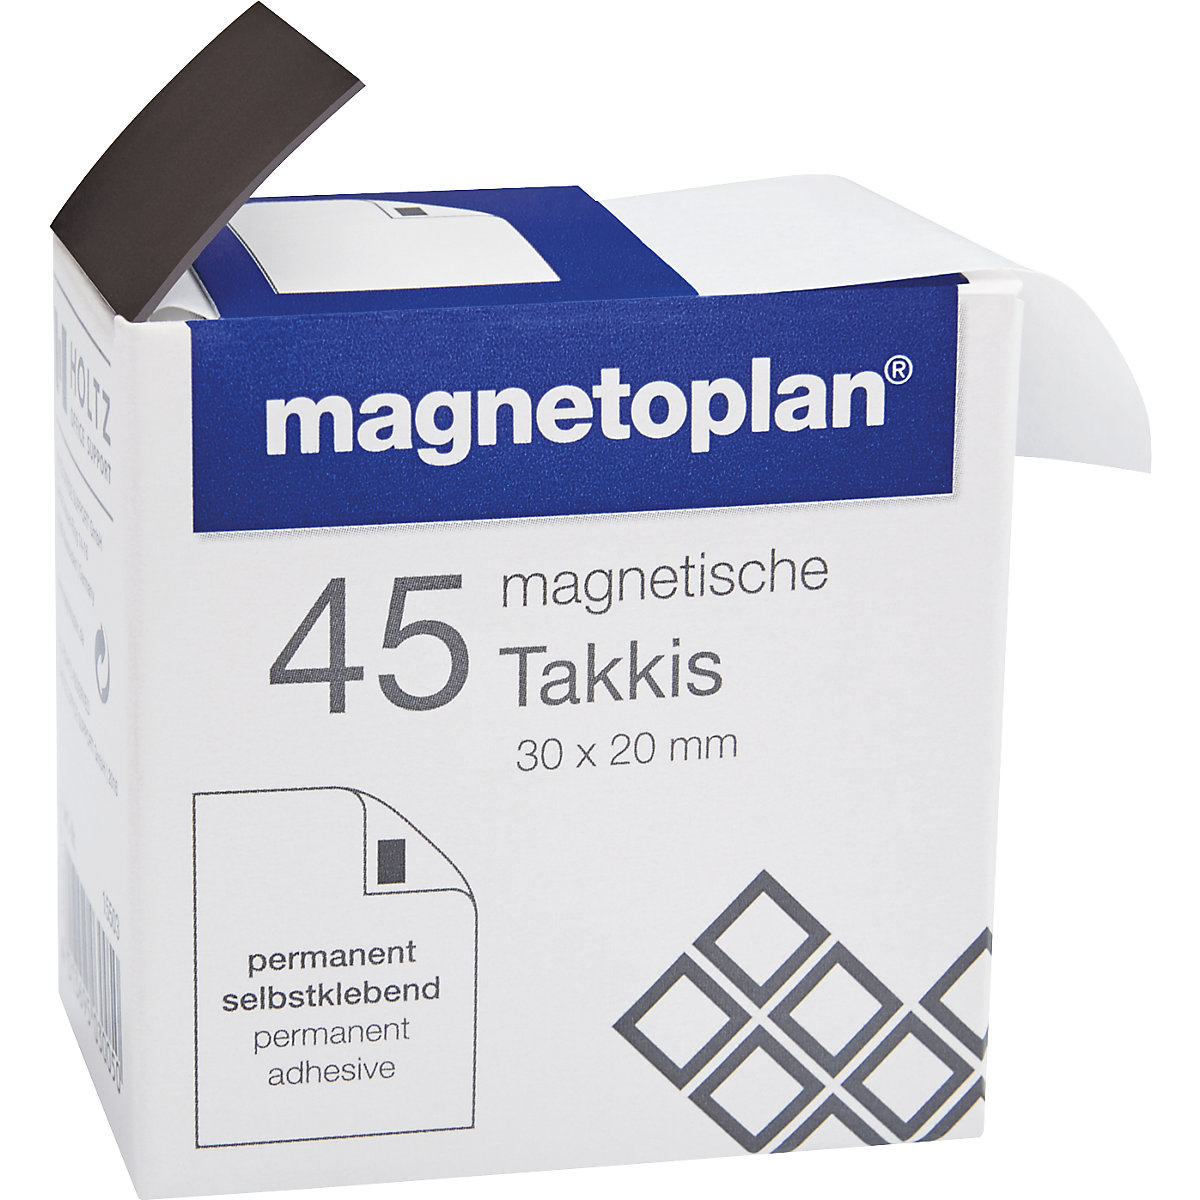 Ljepljivi magneti - magnetoplan